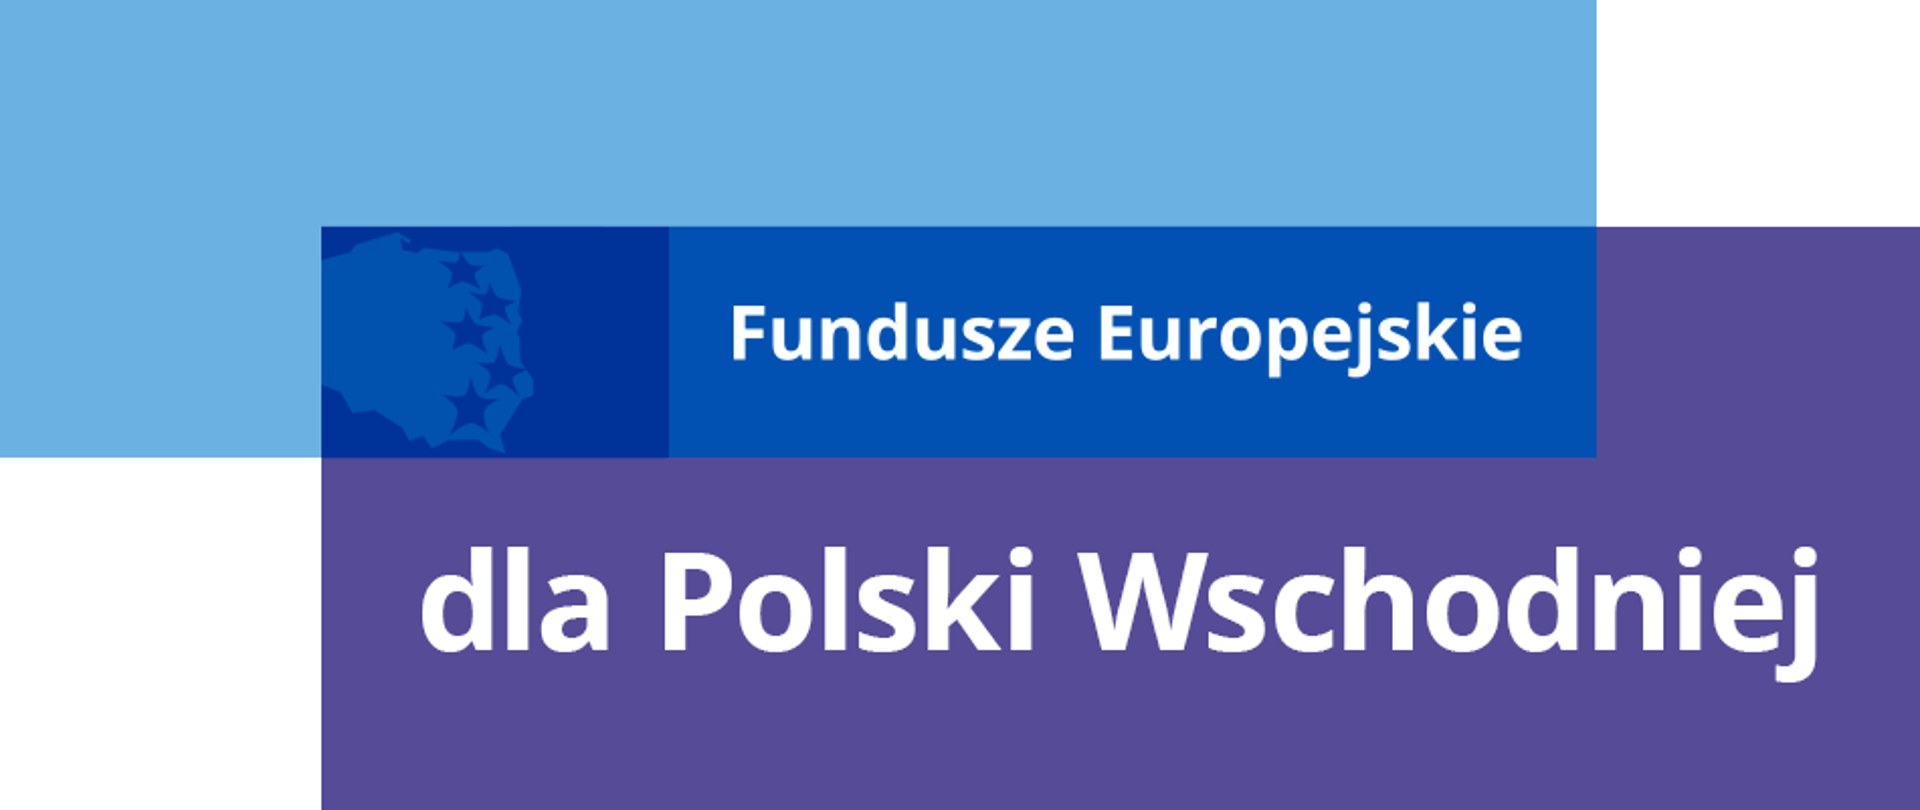 Logotyp: Fundusze Europejskie dla Polski Wschodniej.